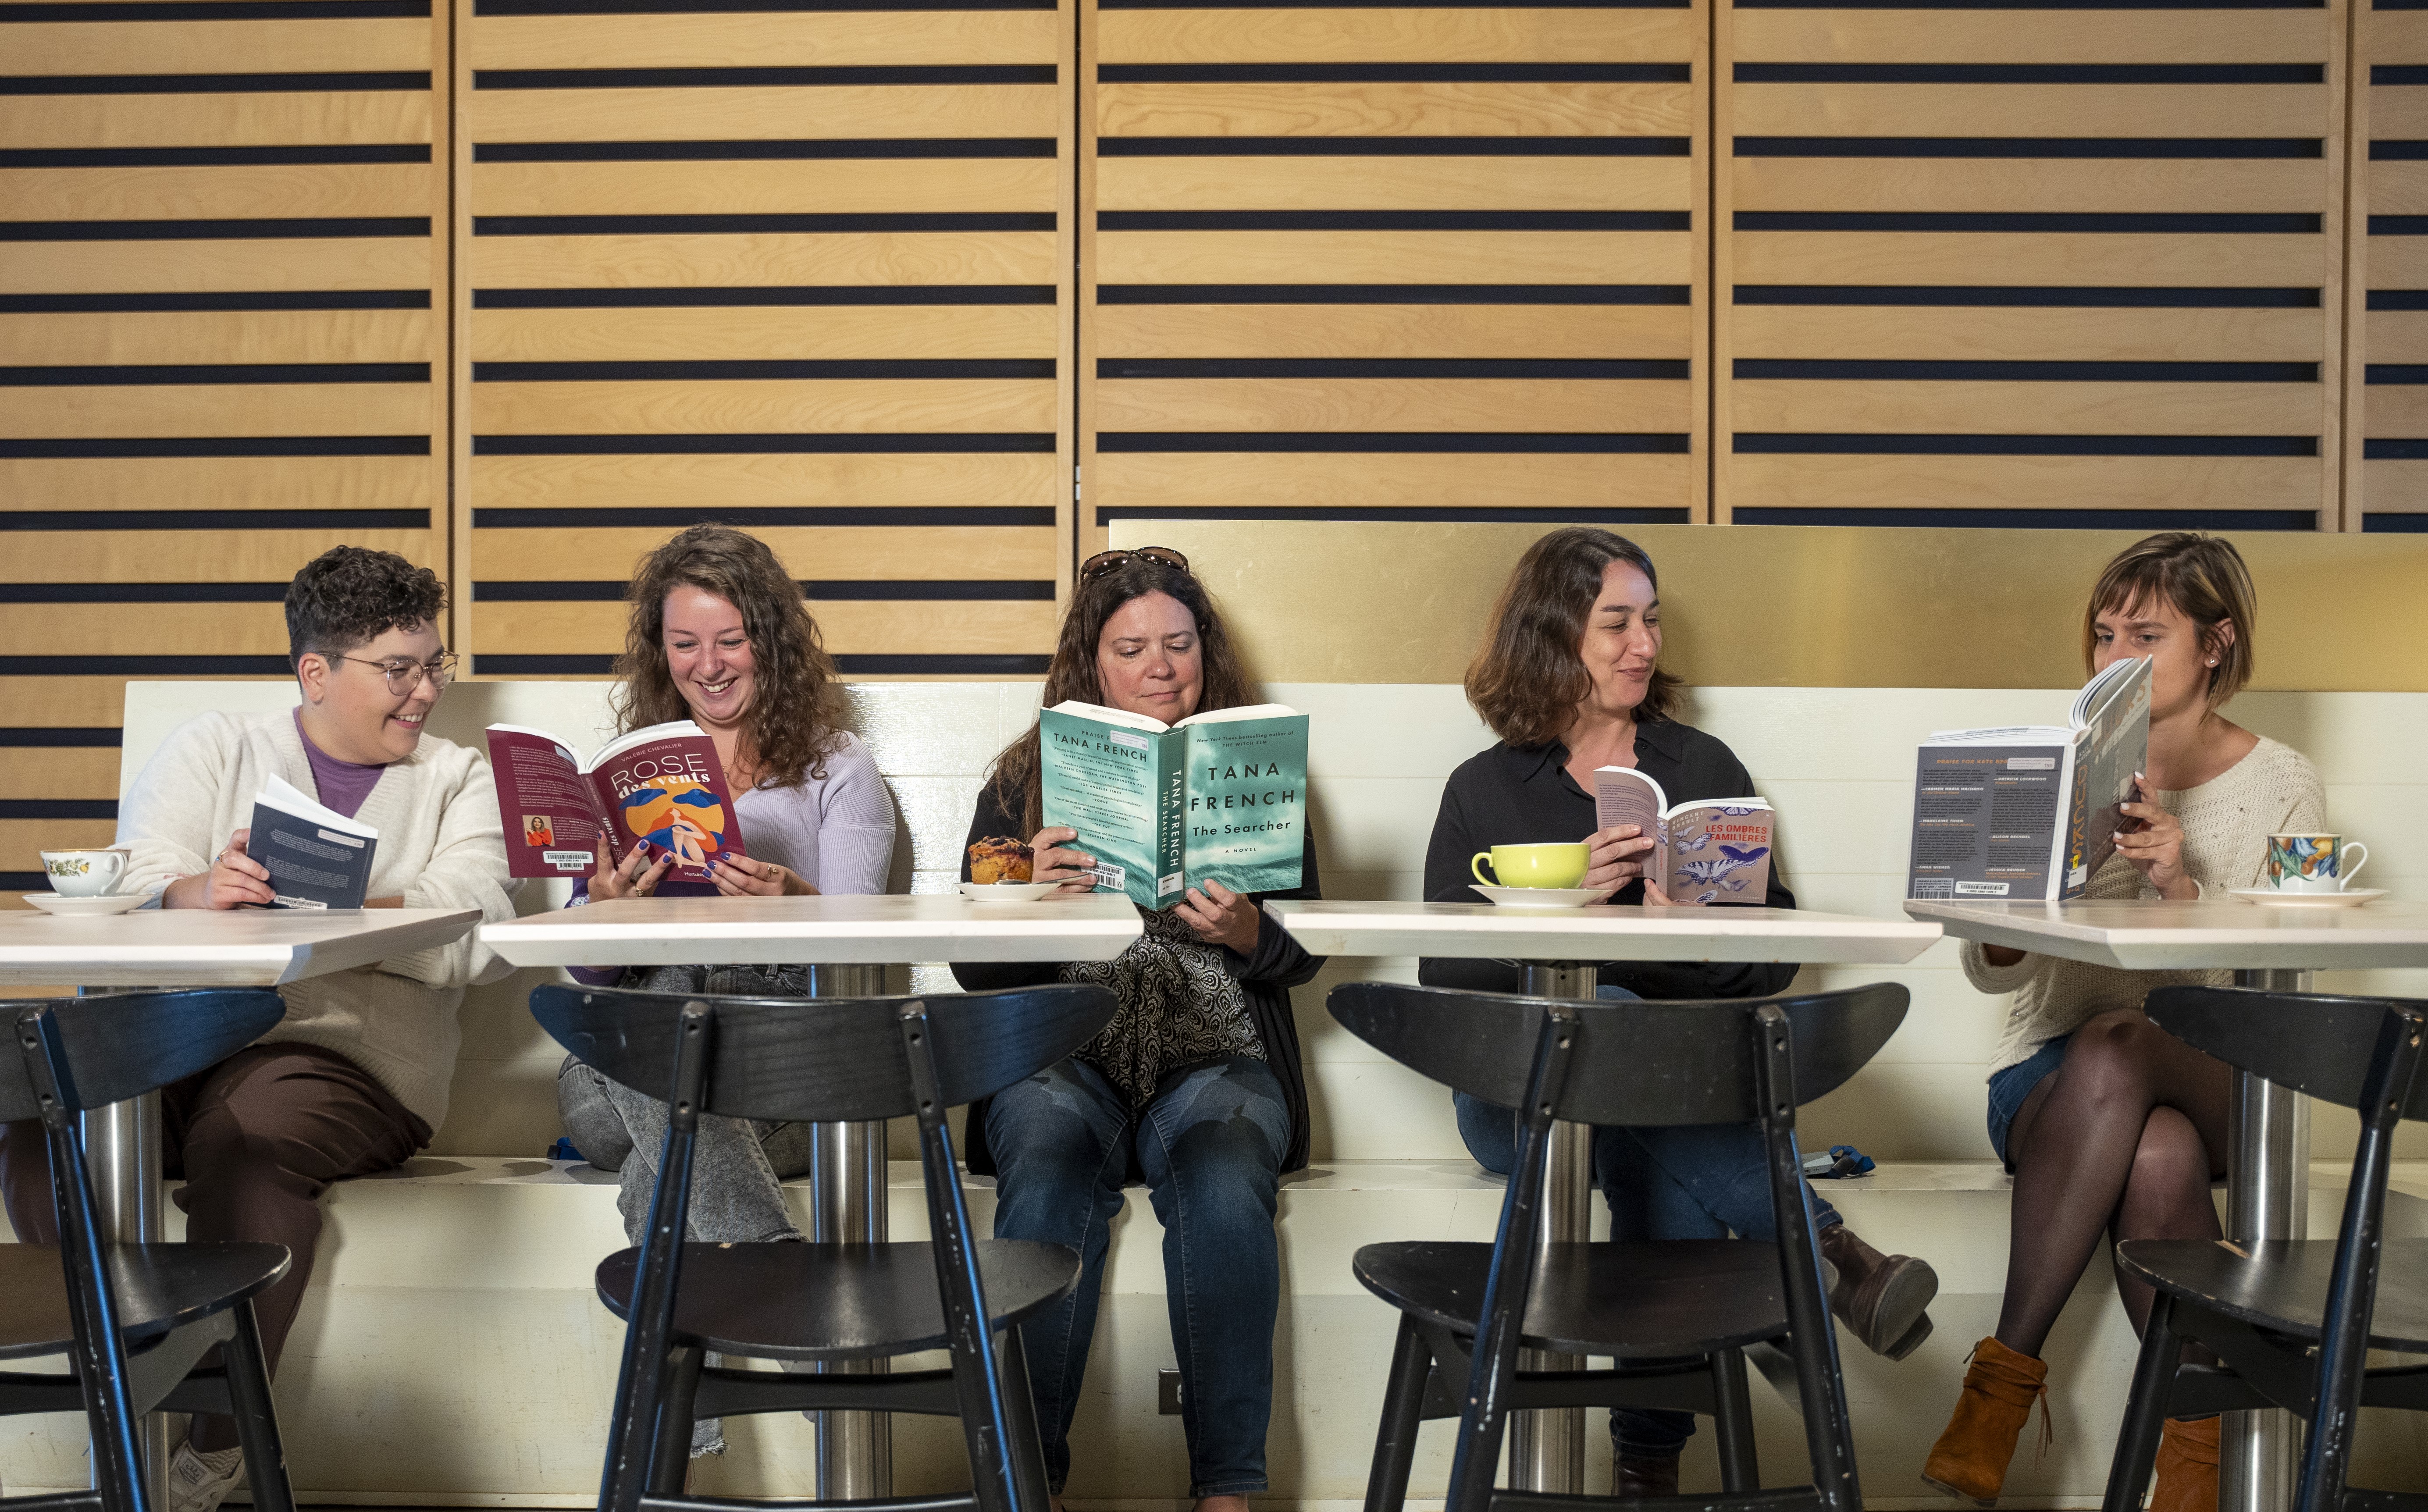 Cinq femmes lisent des livres côte-à-côte.